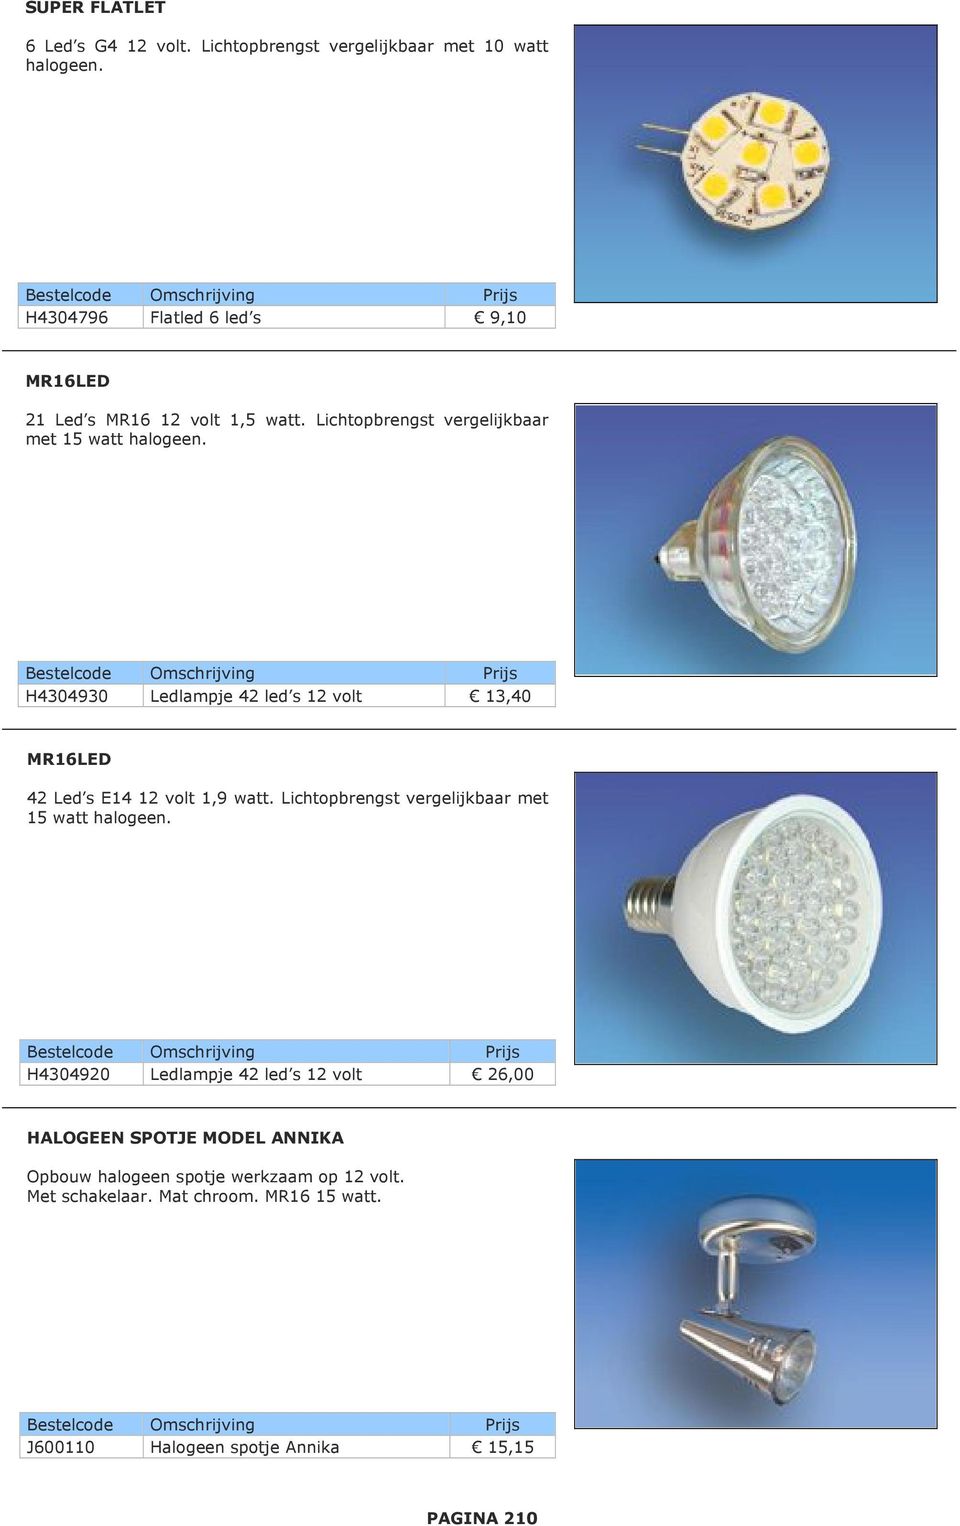 H4304930 Ledlampje 42 led s 12 volt 13,40 MR16LED 42 Led s E14 12 volt 1,9 watt. Lichtopbrengst vergelijkbaar met 15 watt halogeen.